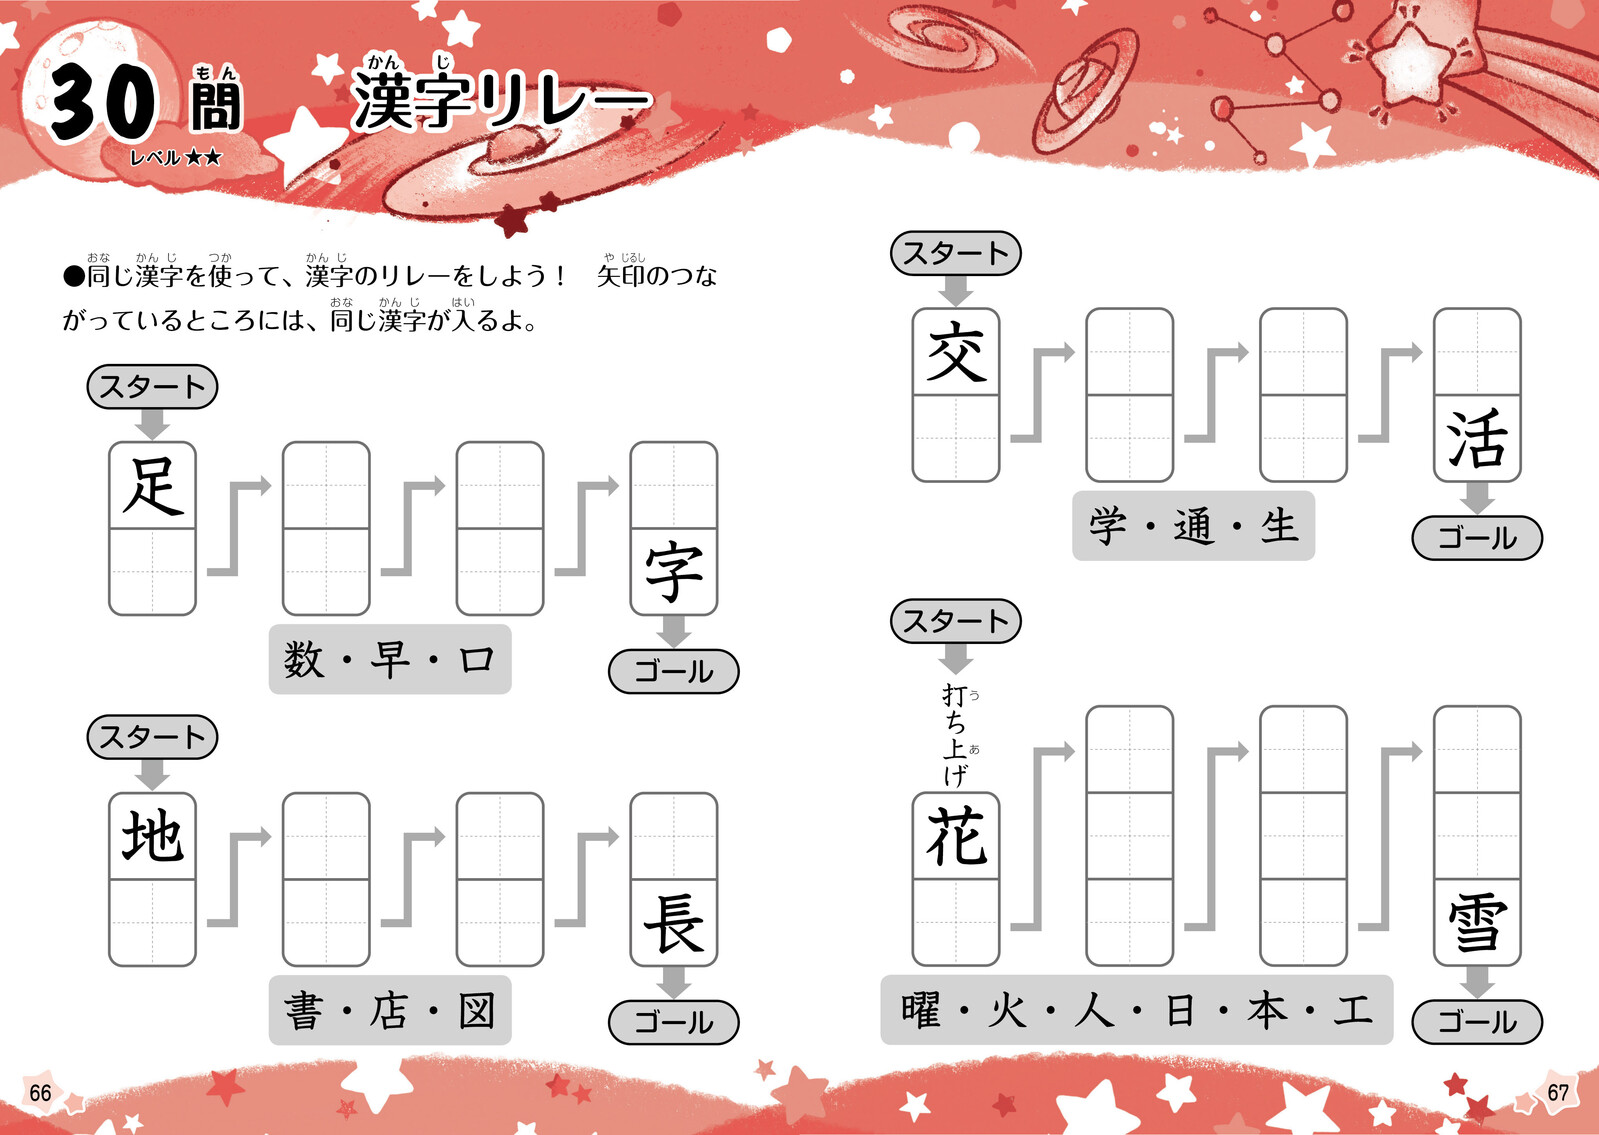 小学1 2 3年生の漢字クロスワード パズルの商品ページ 卸 仕入れサイト スーパーデリバリー